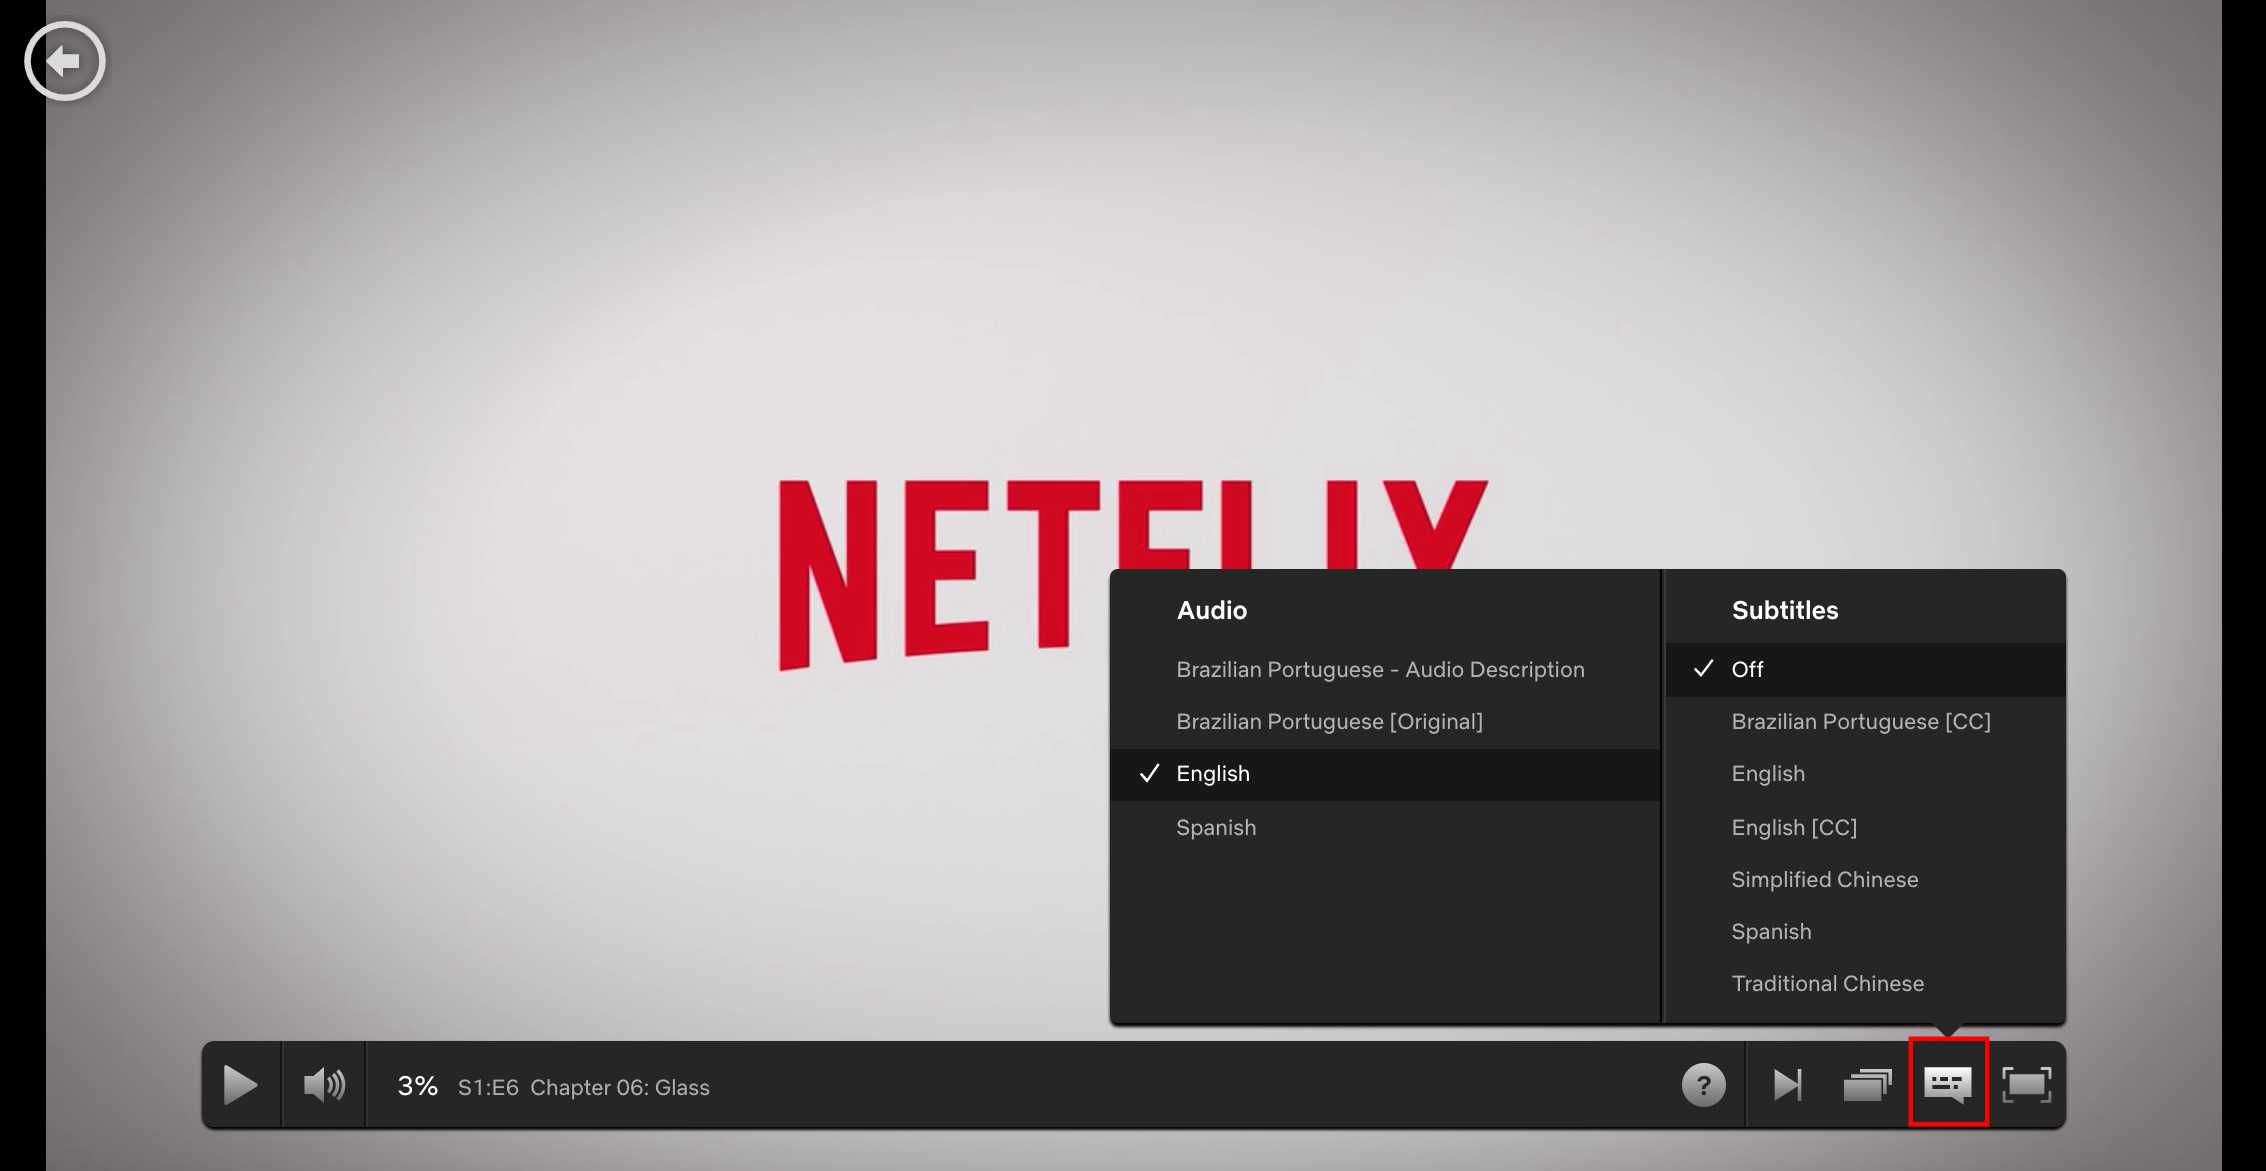 Alternativen för ljud och undertexter läggs över Netflix-logotypen.